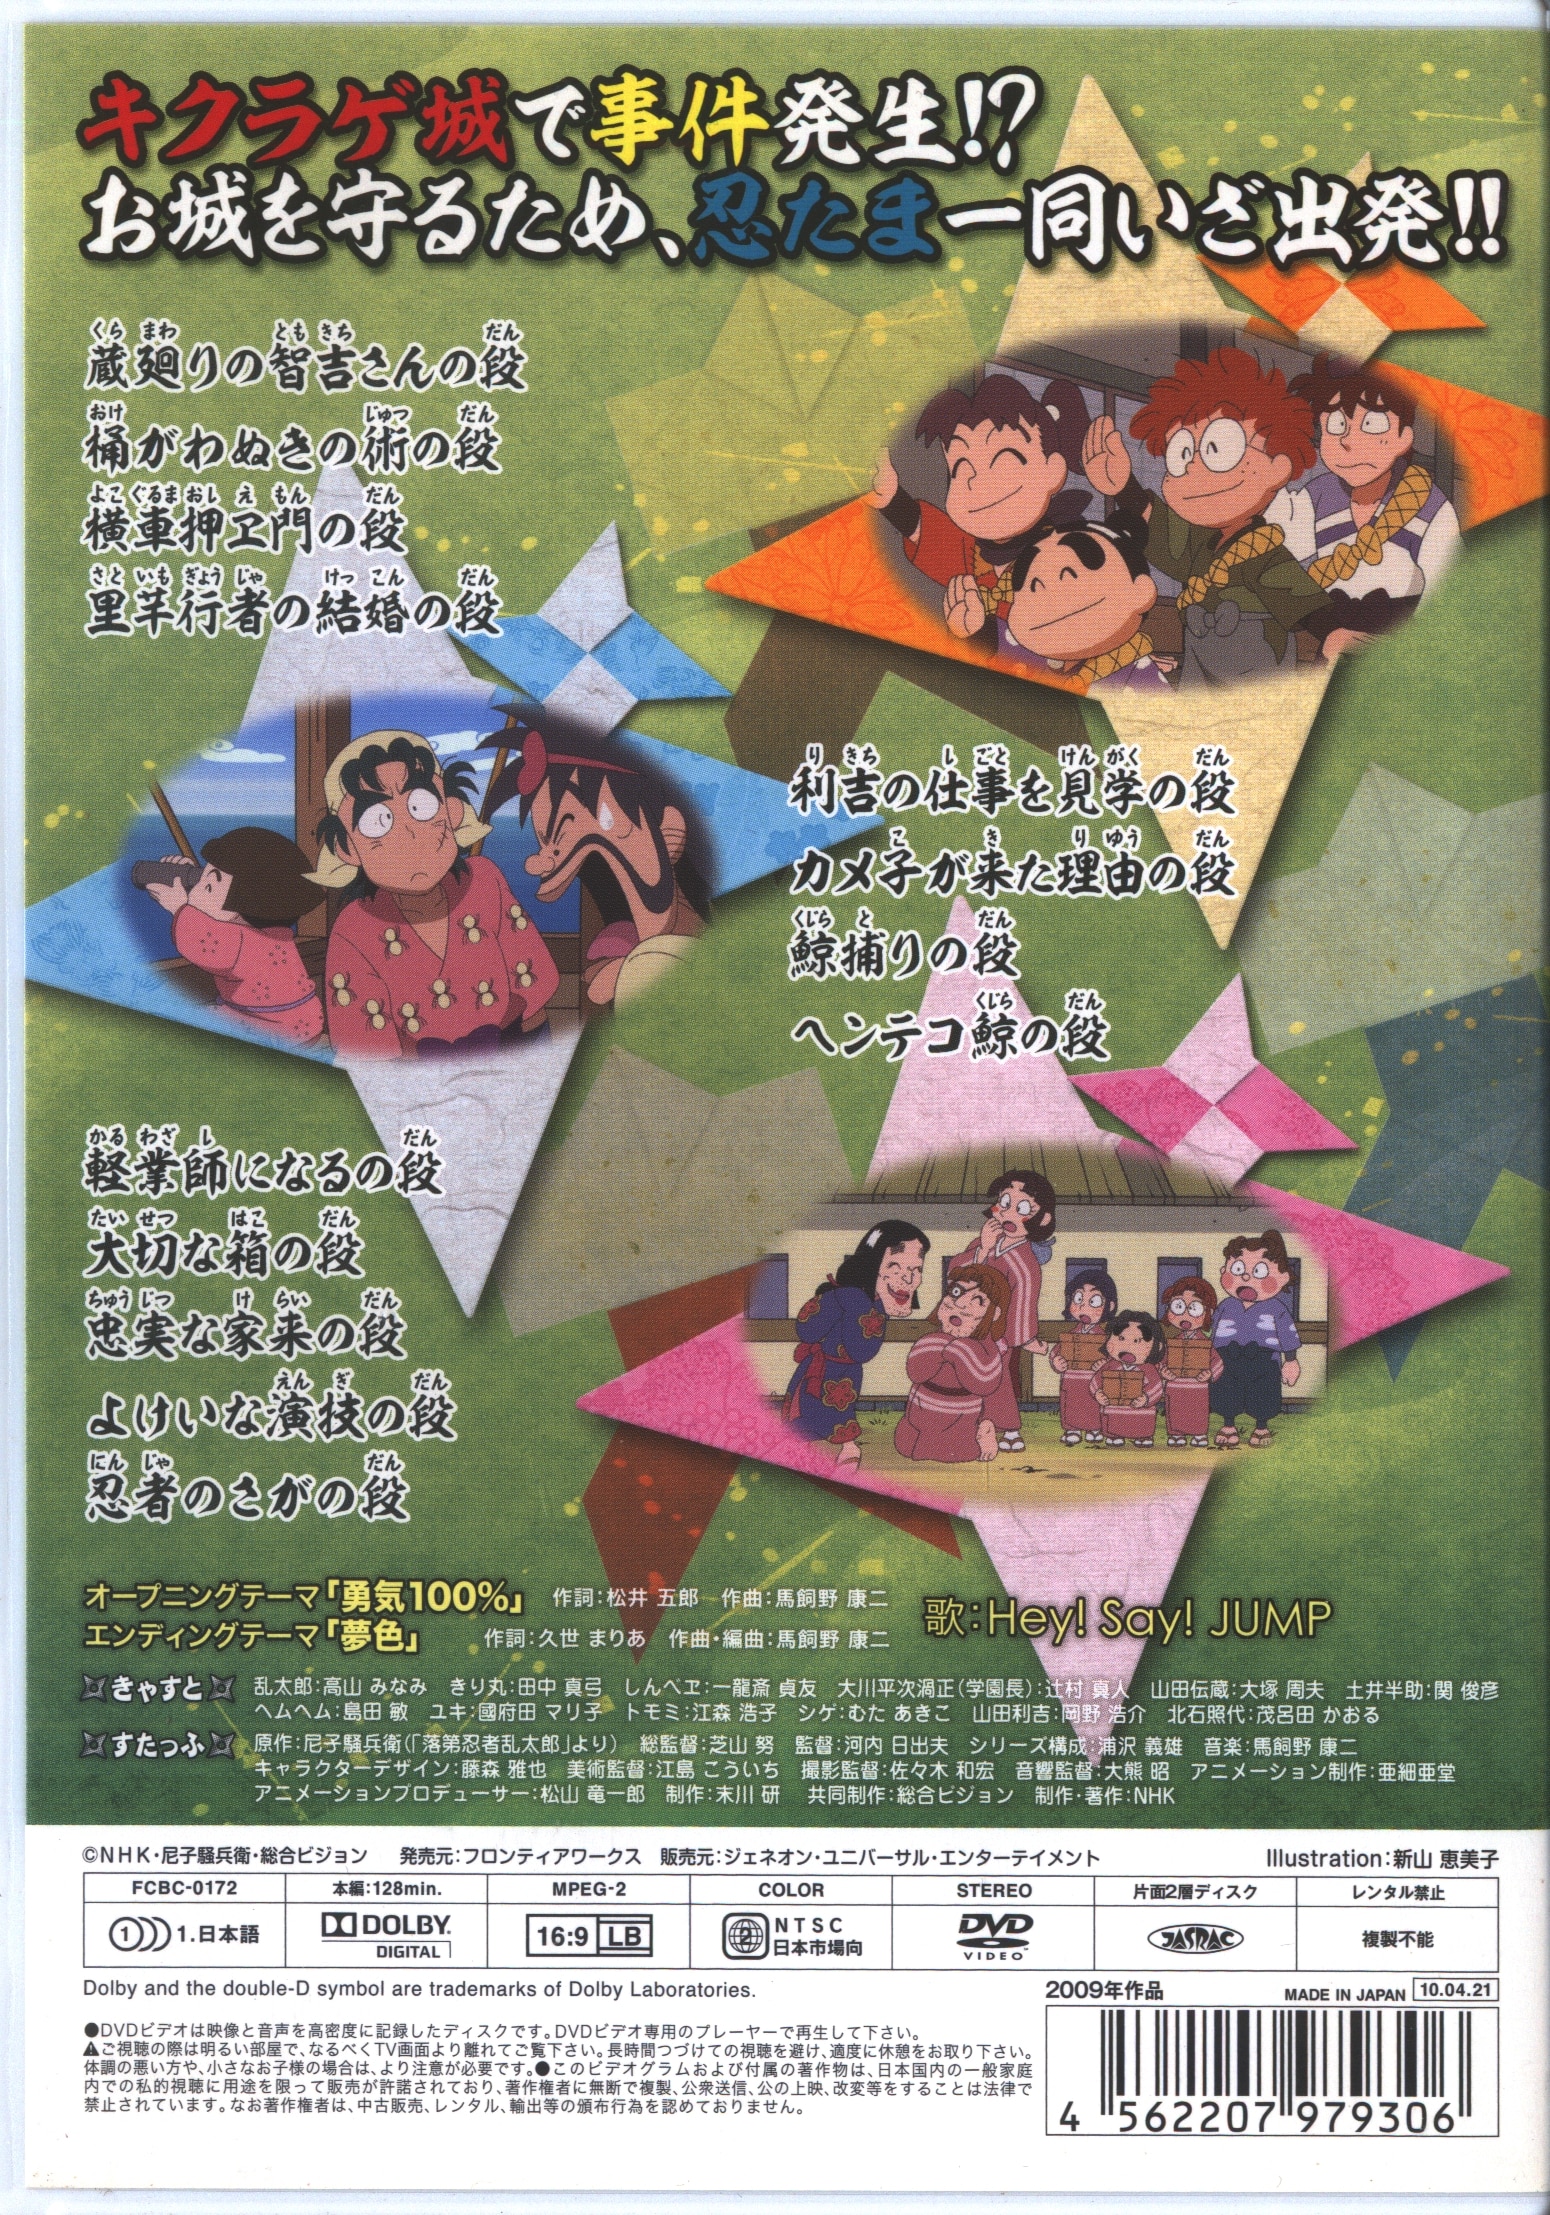 忍たま乱太郎 DVD 16 17シリーズのセット - アニメ